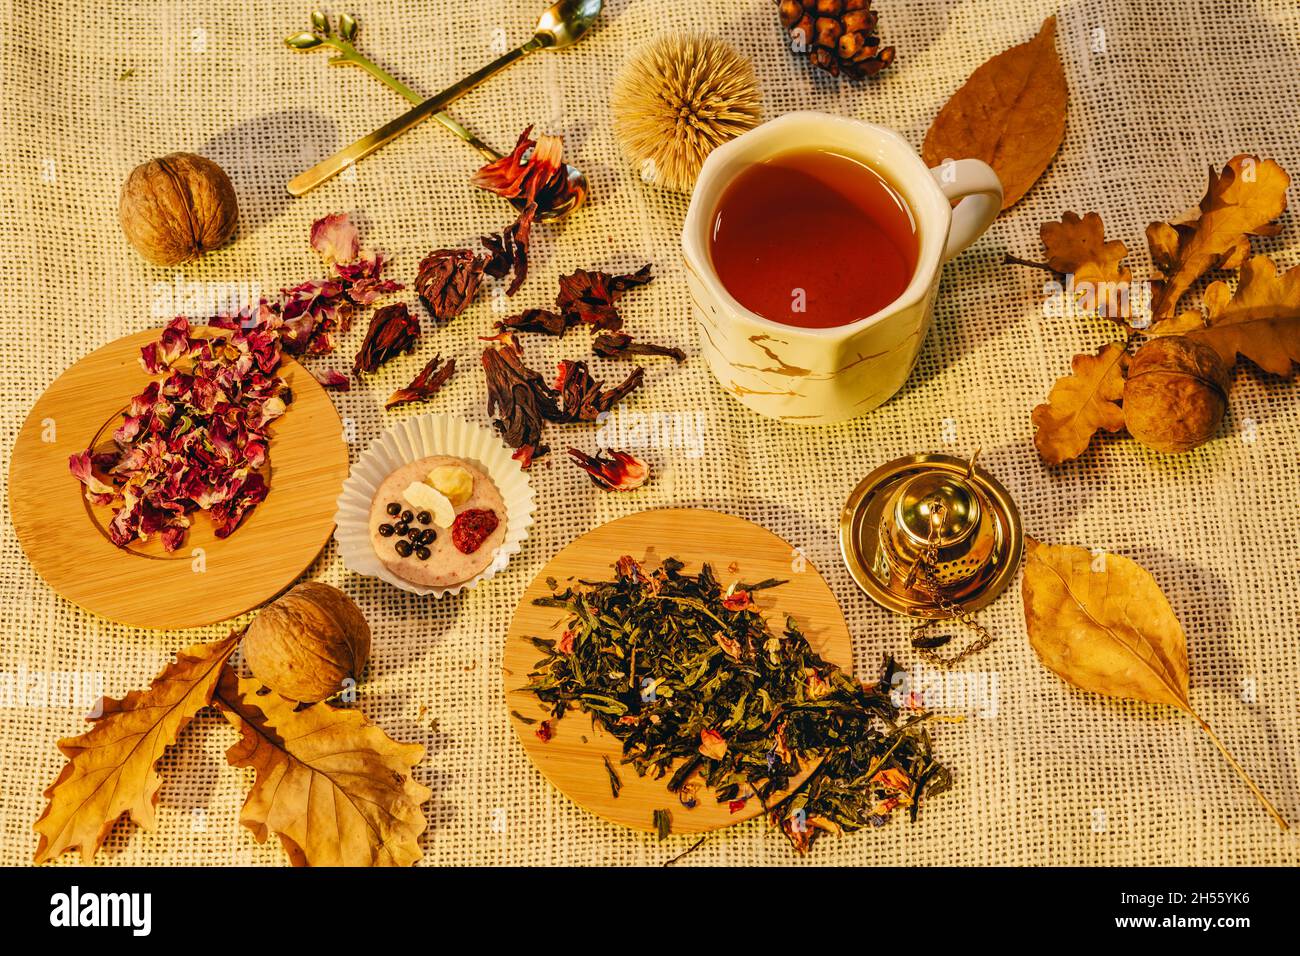 Stillleben im Herbst mit getrockneten Teelaubennüssen und einer Tasse Tee. Warme Herbststimmung mit Herbstblättern Stockfoto